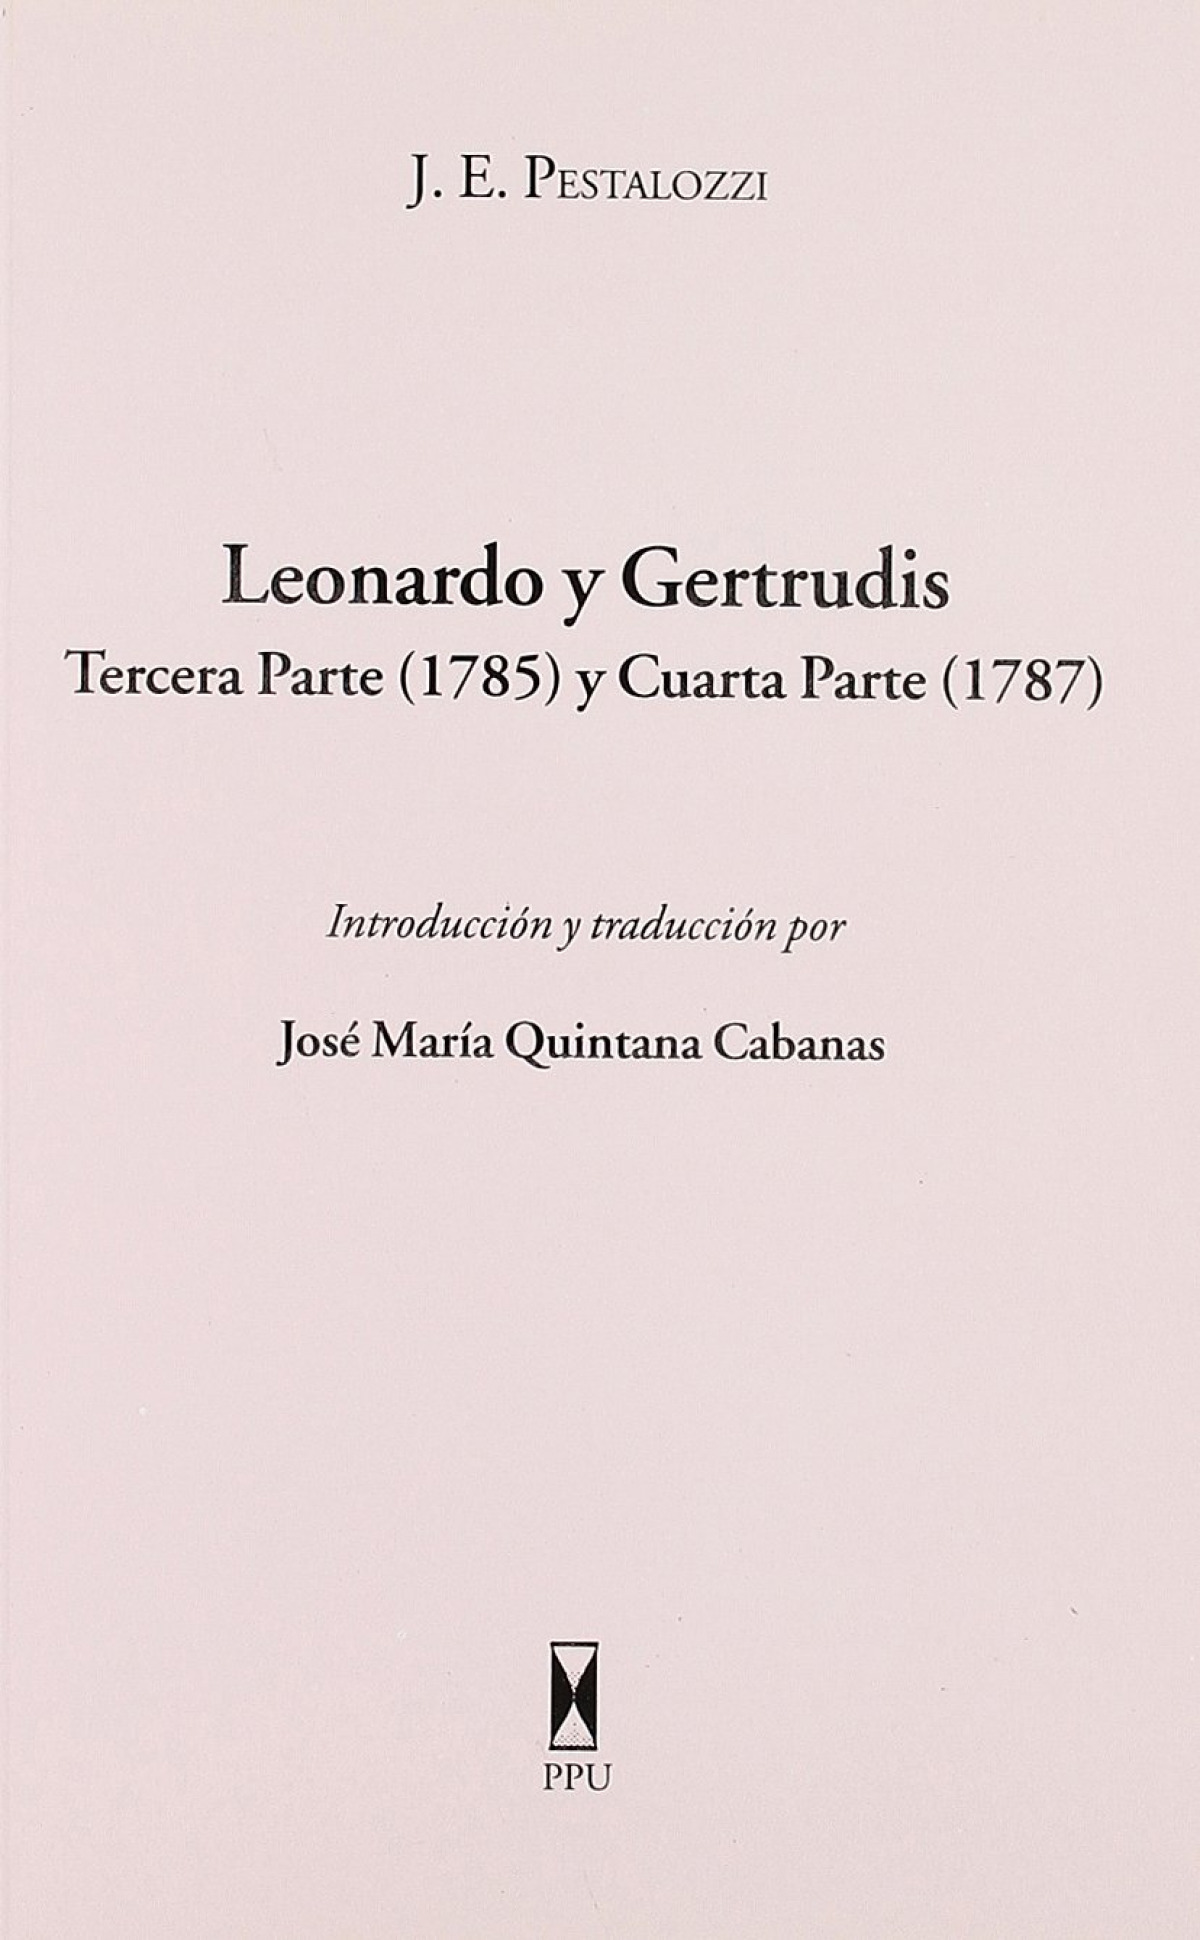 Leonardo y gertrudis - Pestalozzi, J.E.